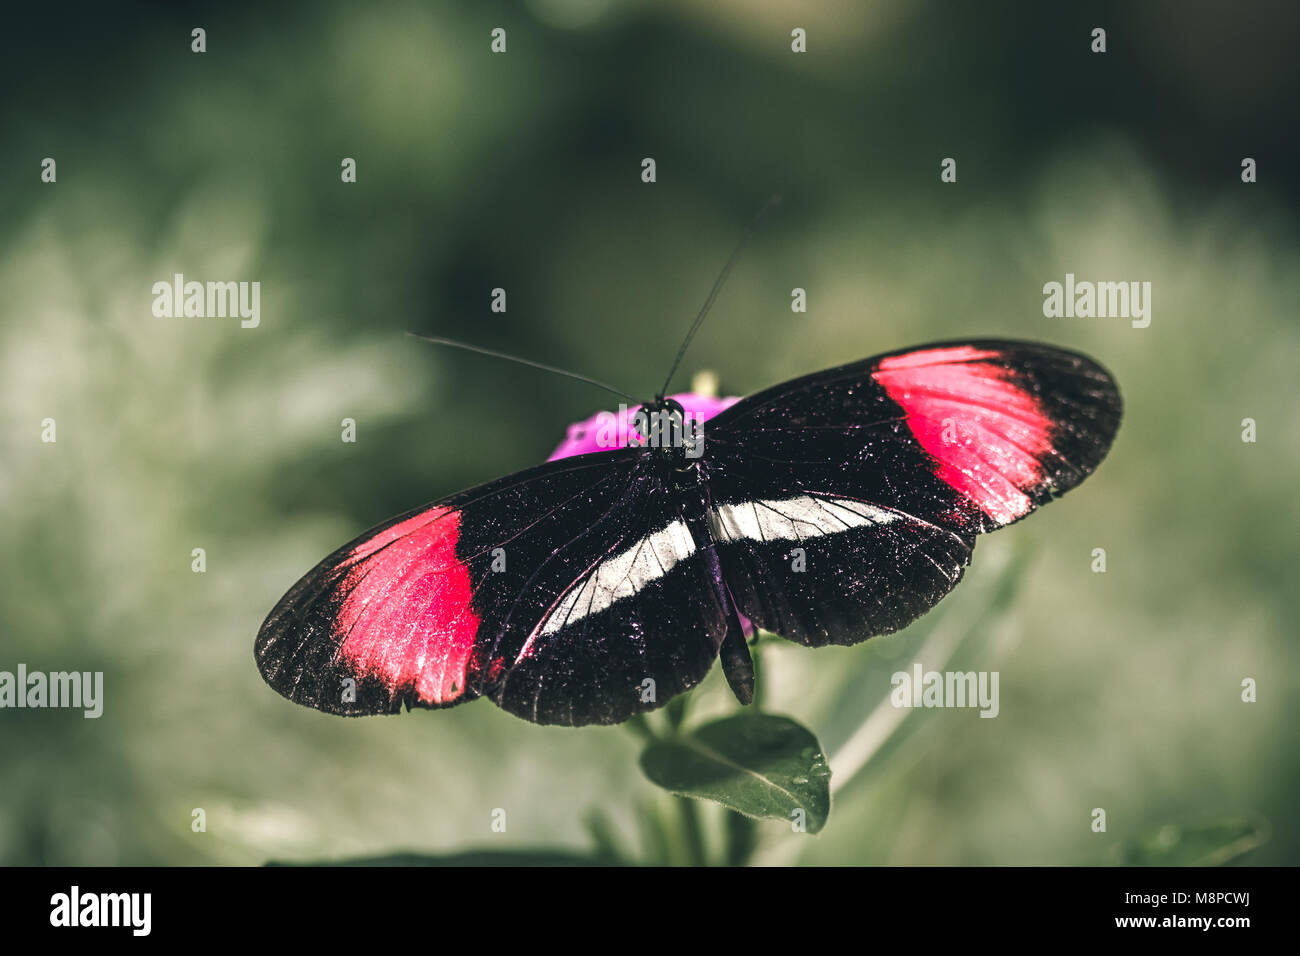 Rot Postbote (Heliconius erato) Schmetterling, auch bekannt als der kleine Briefträger bekannt, die rote Passionsblume Schmetterling, oder den Crimson-gepatcht longwing. Stockfoto